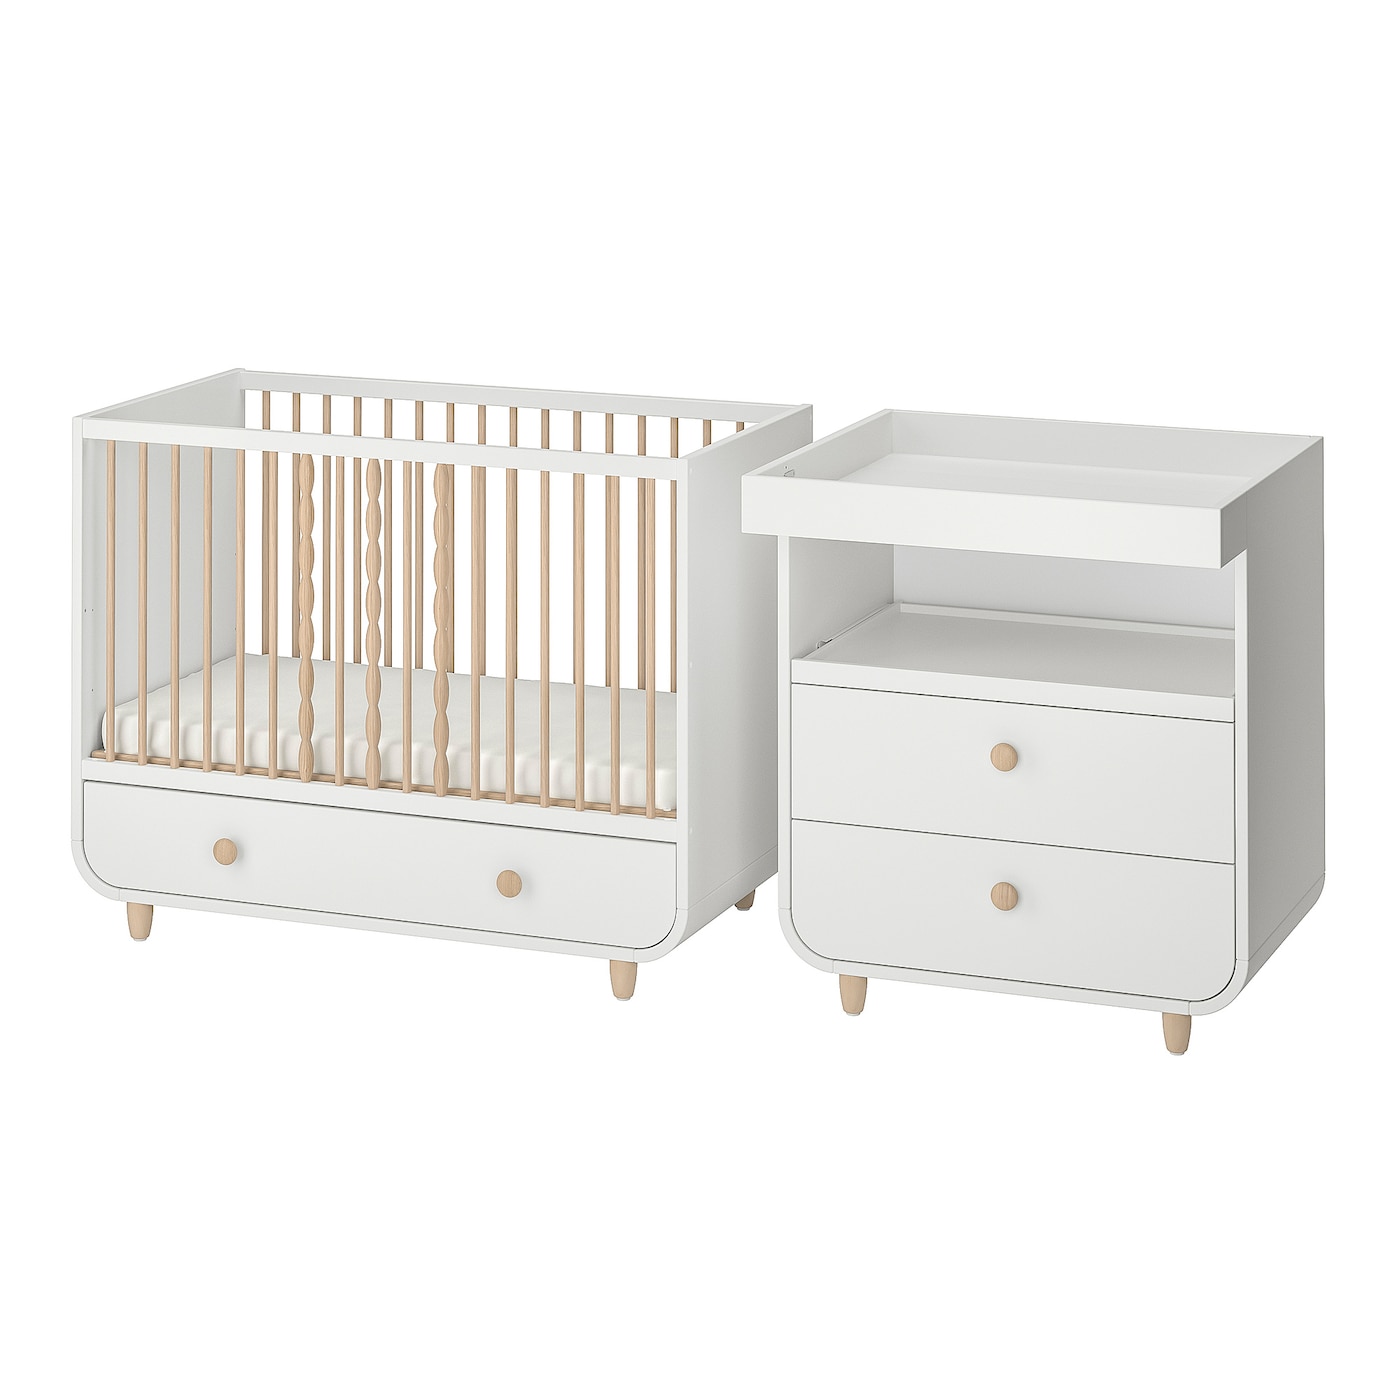 Комплект детской мебели из 2 предметов - IKEA MYLLRA, 130x60см, белый, МИЛЛРА ИКЕА